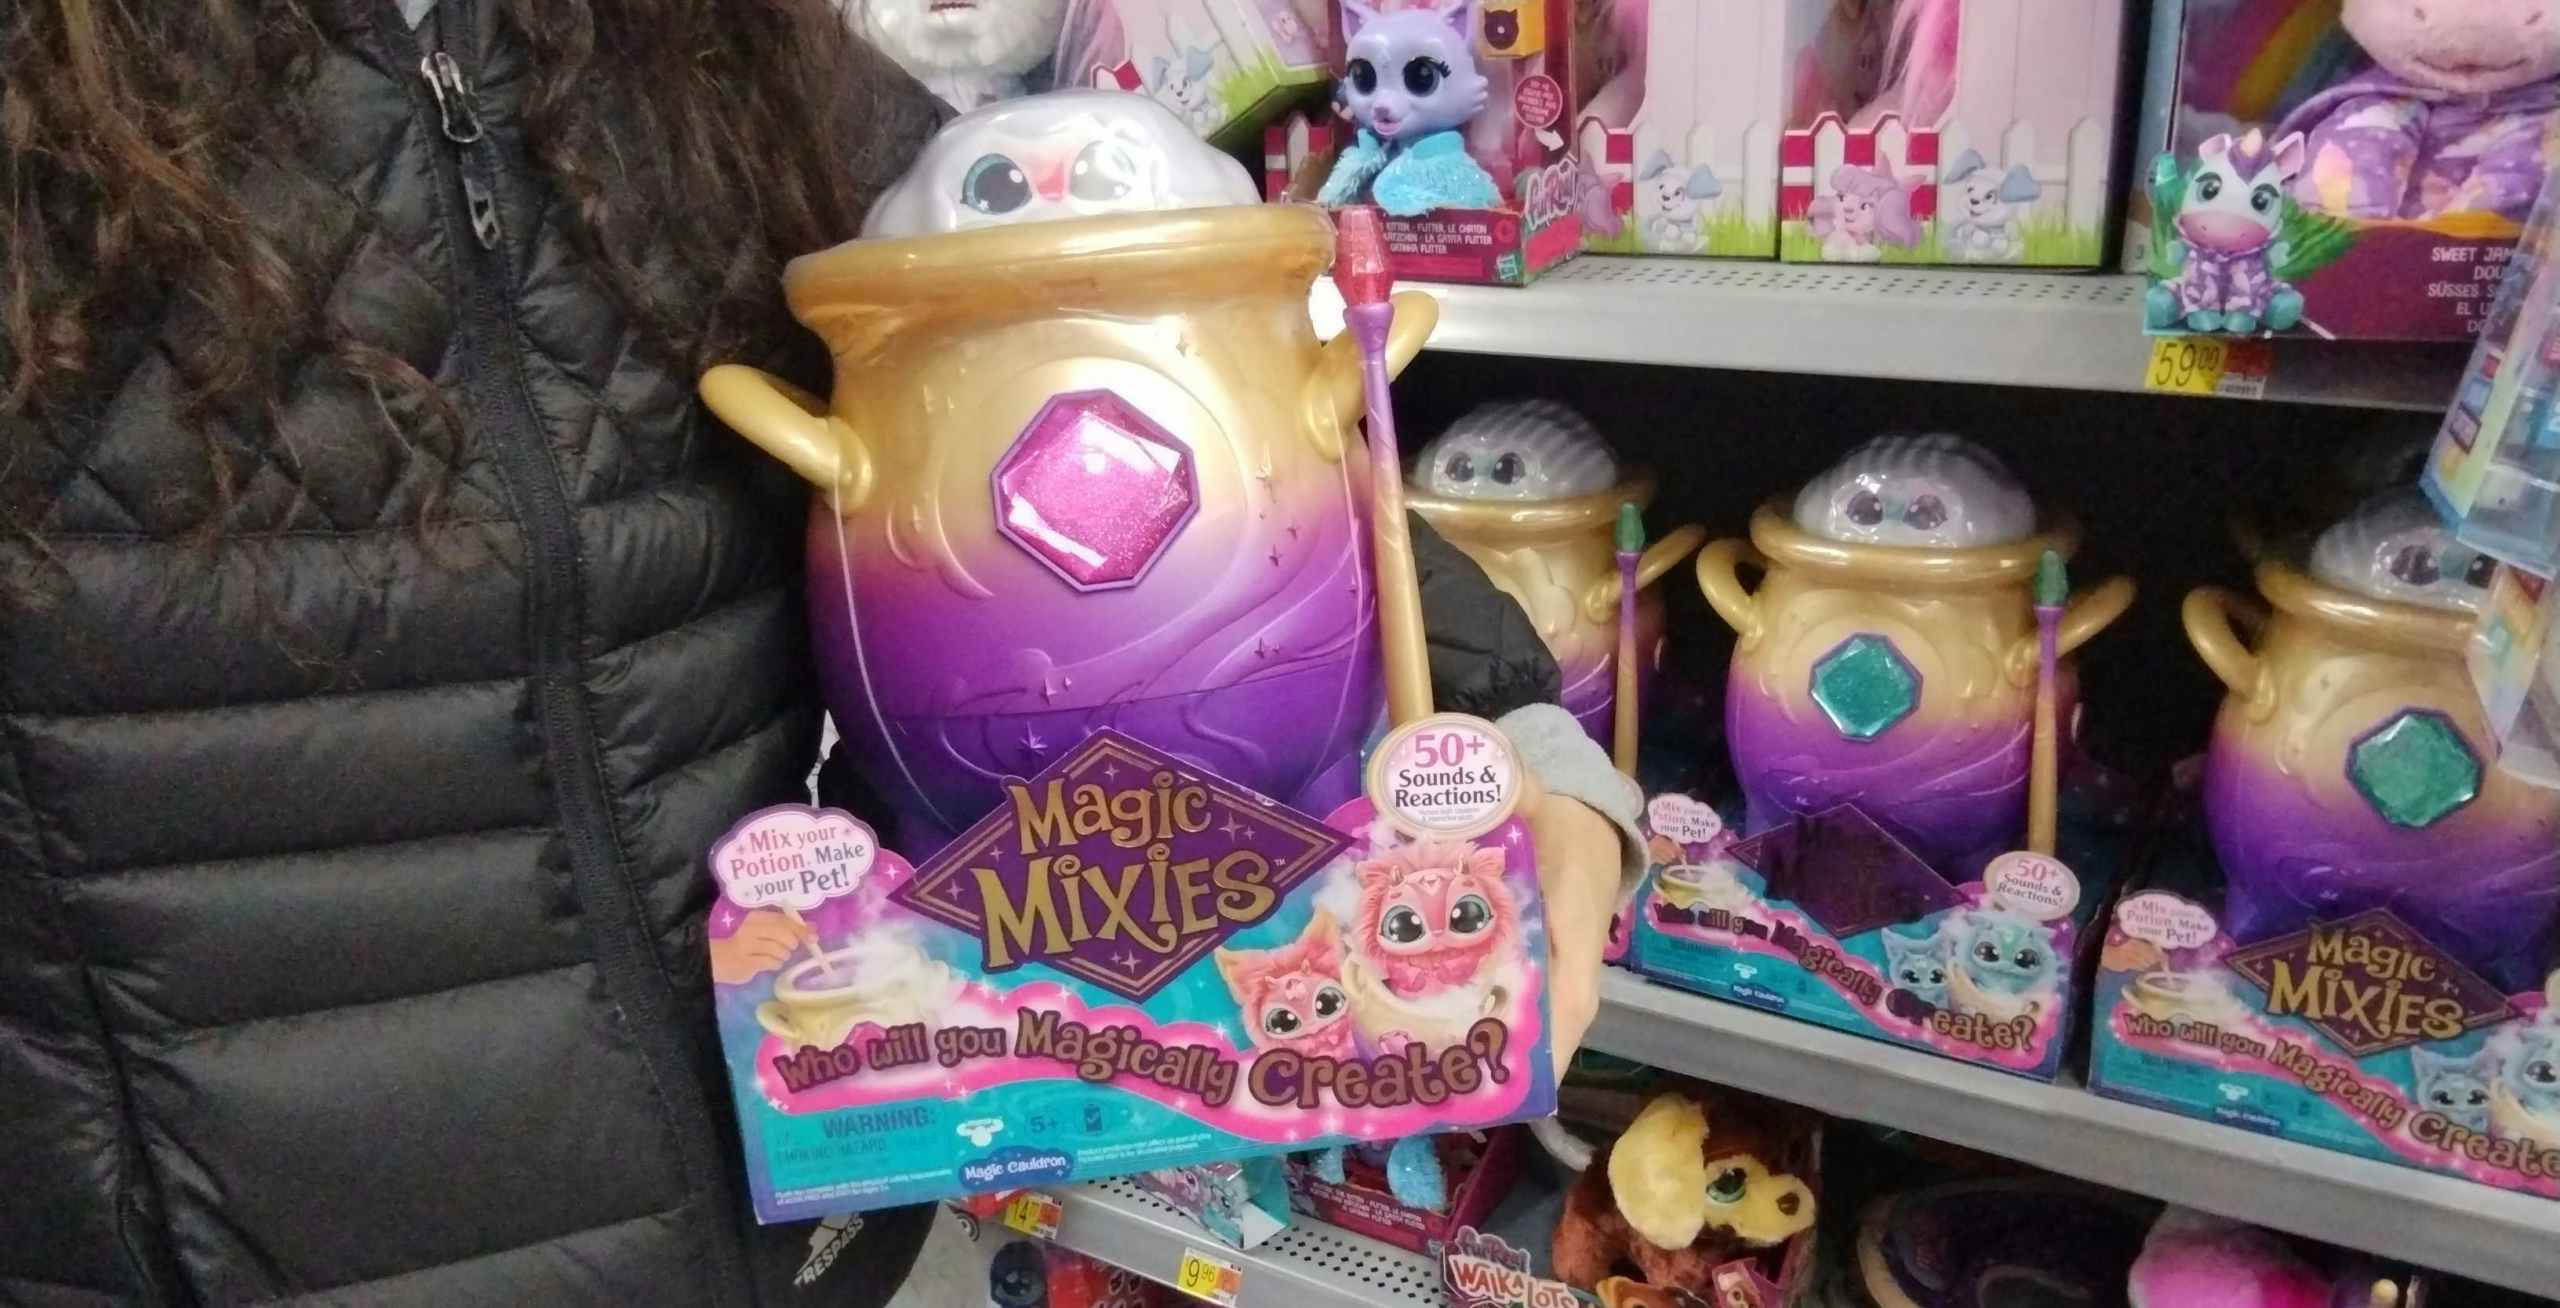 Magic Mixies at Walmart